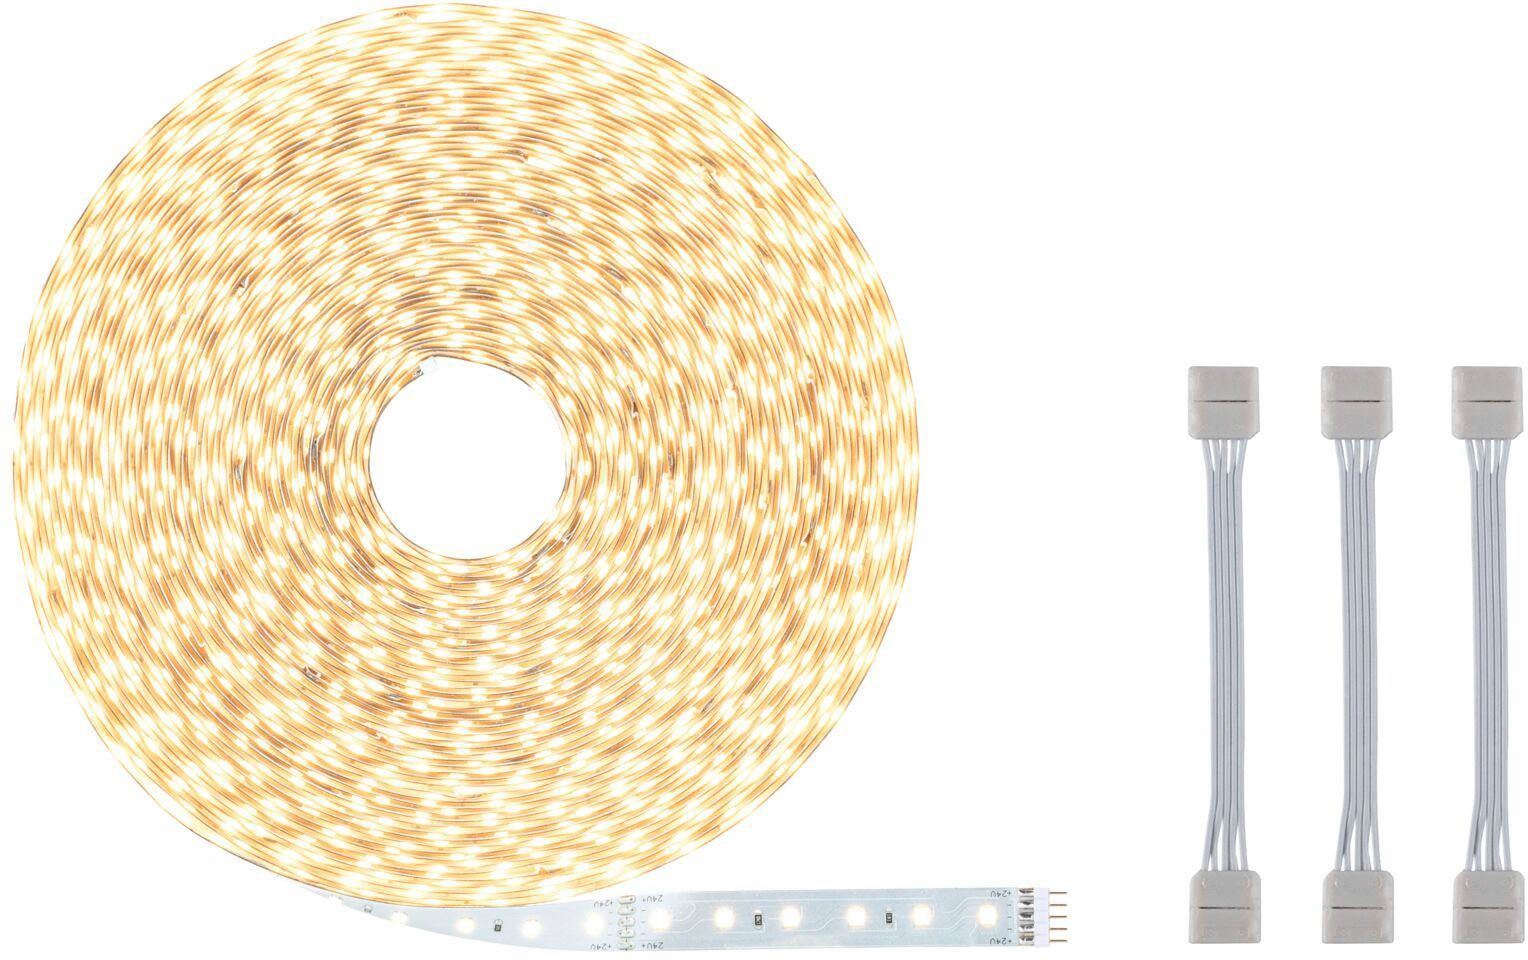 Paulmann LED-Streifen MaxLED Einzelstripe Warmweiße 550lm/m, 20m Adapterkabel inkl. unbeschichtet 1-flammig, 72W 500